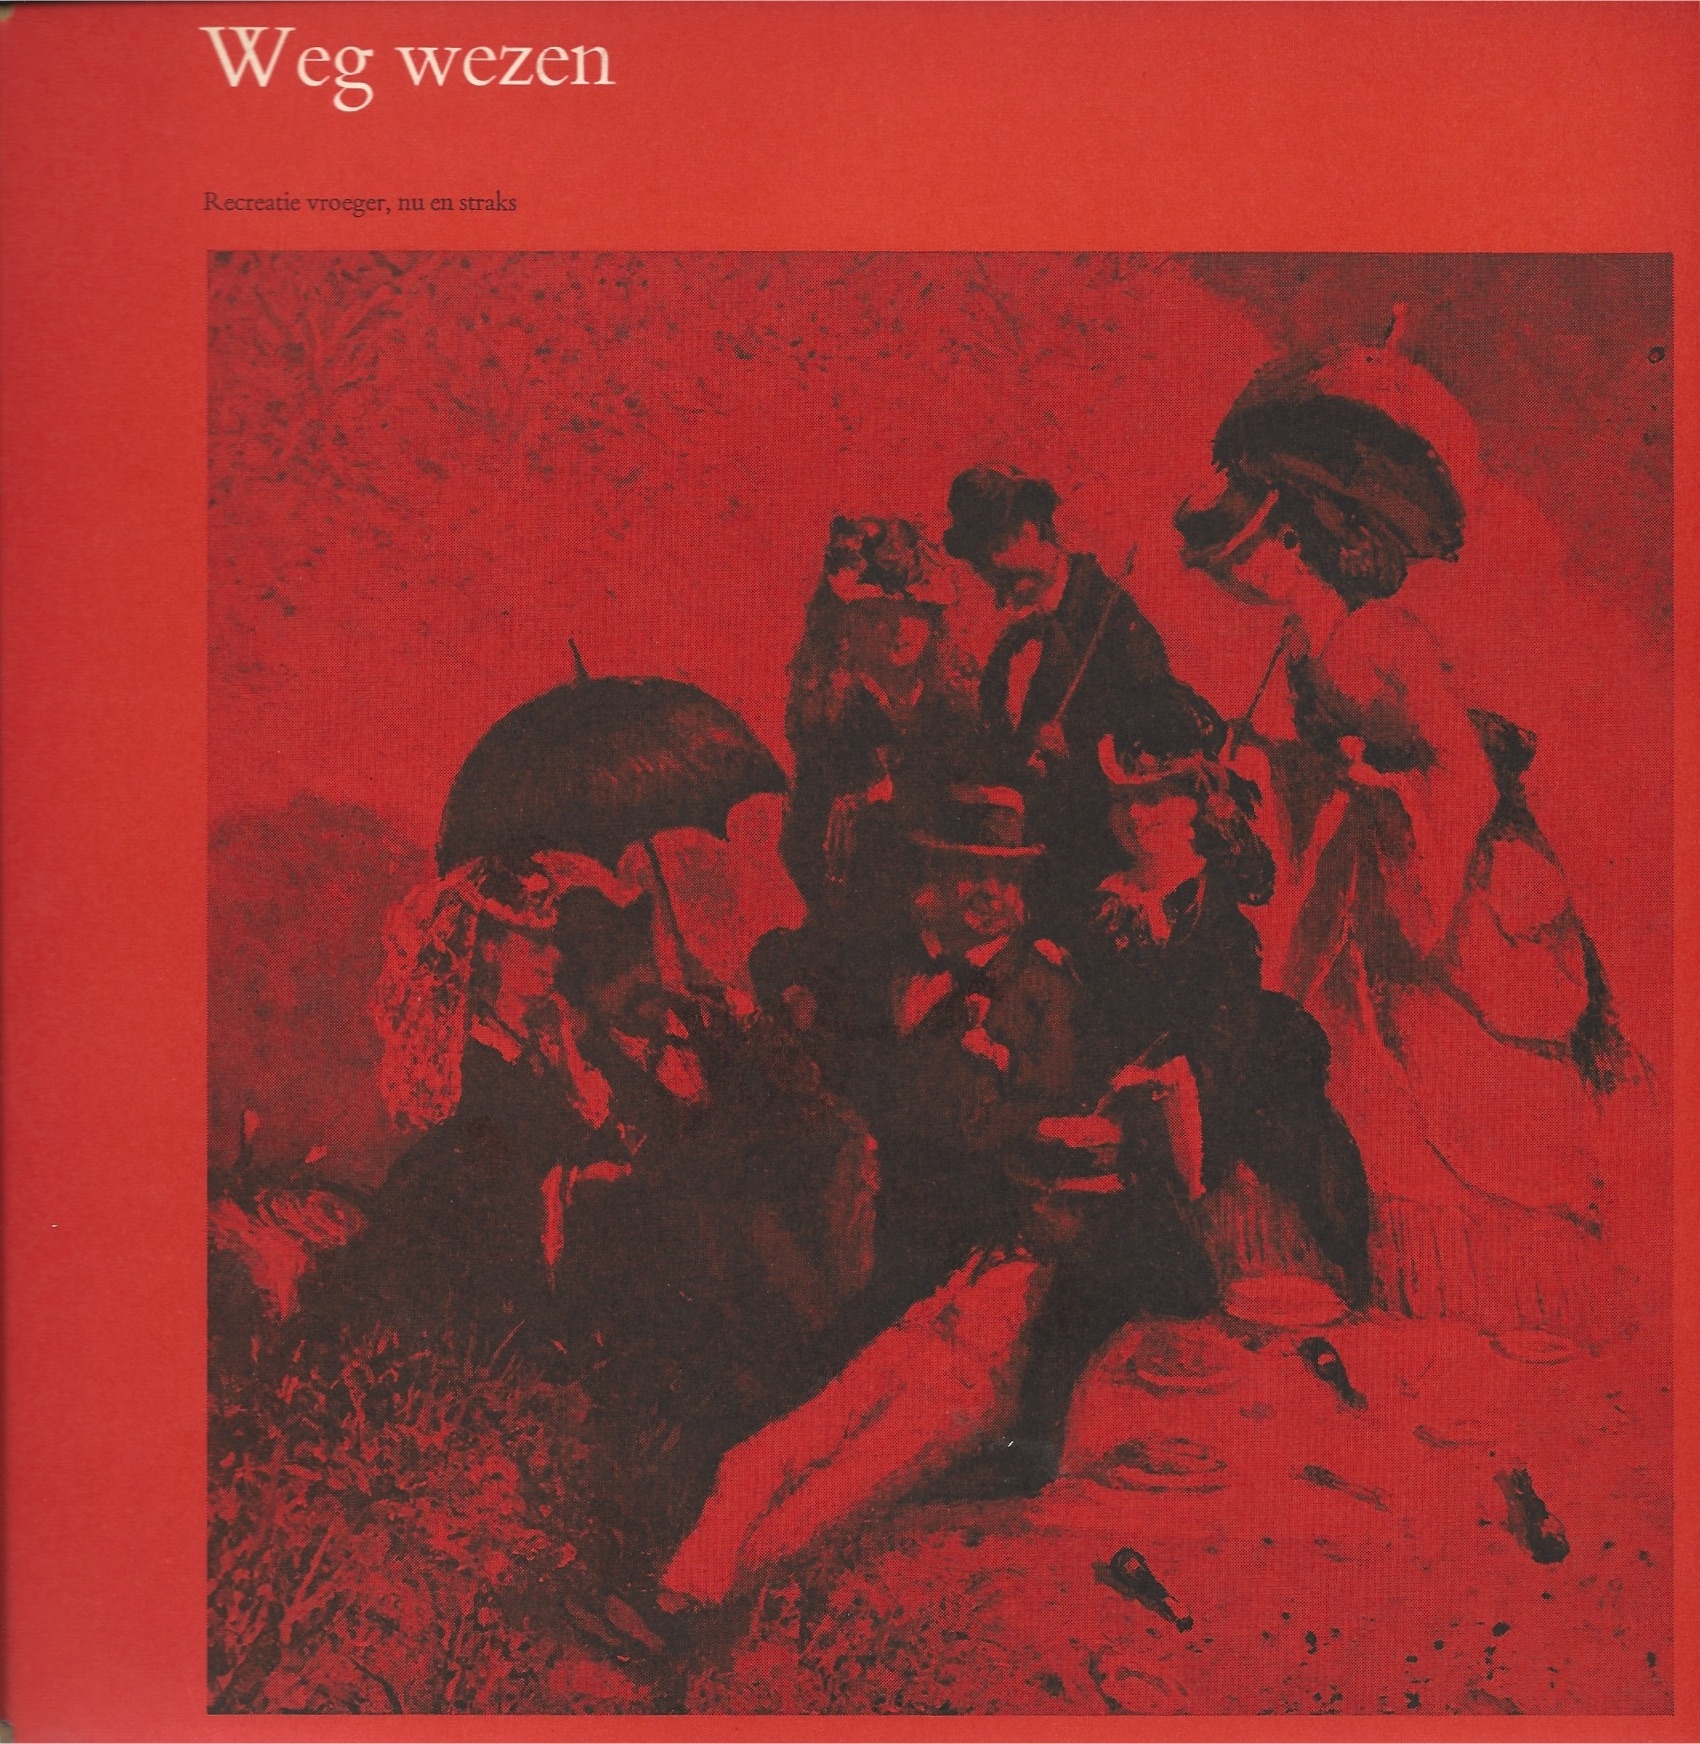 Weg wezen, 1969-1970